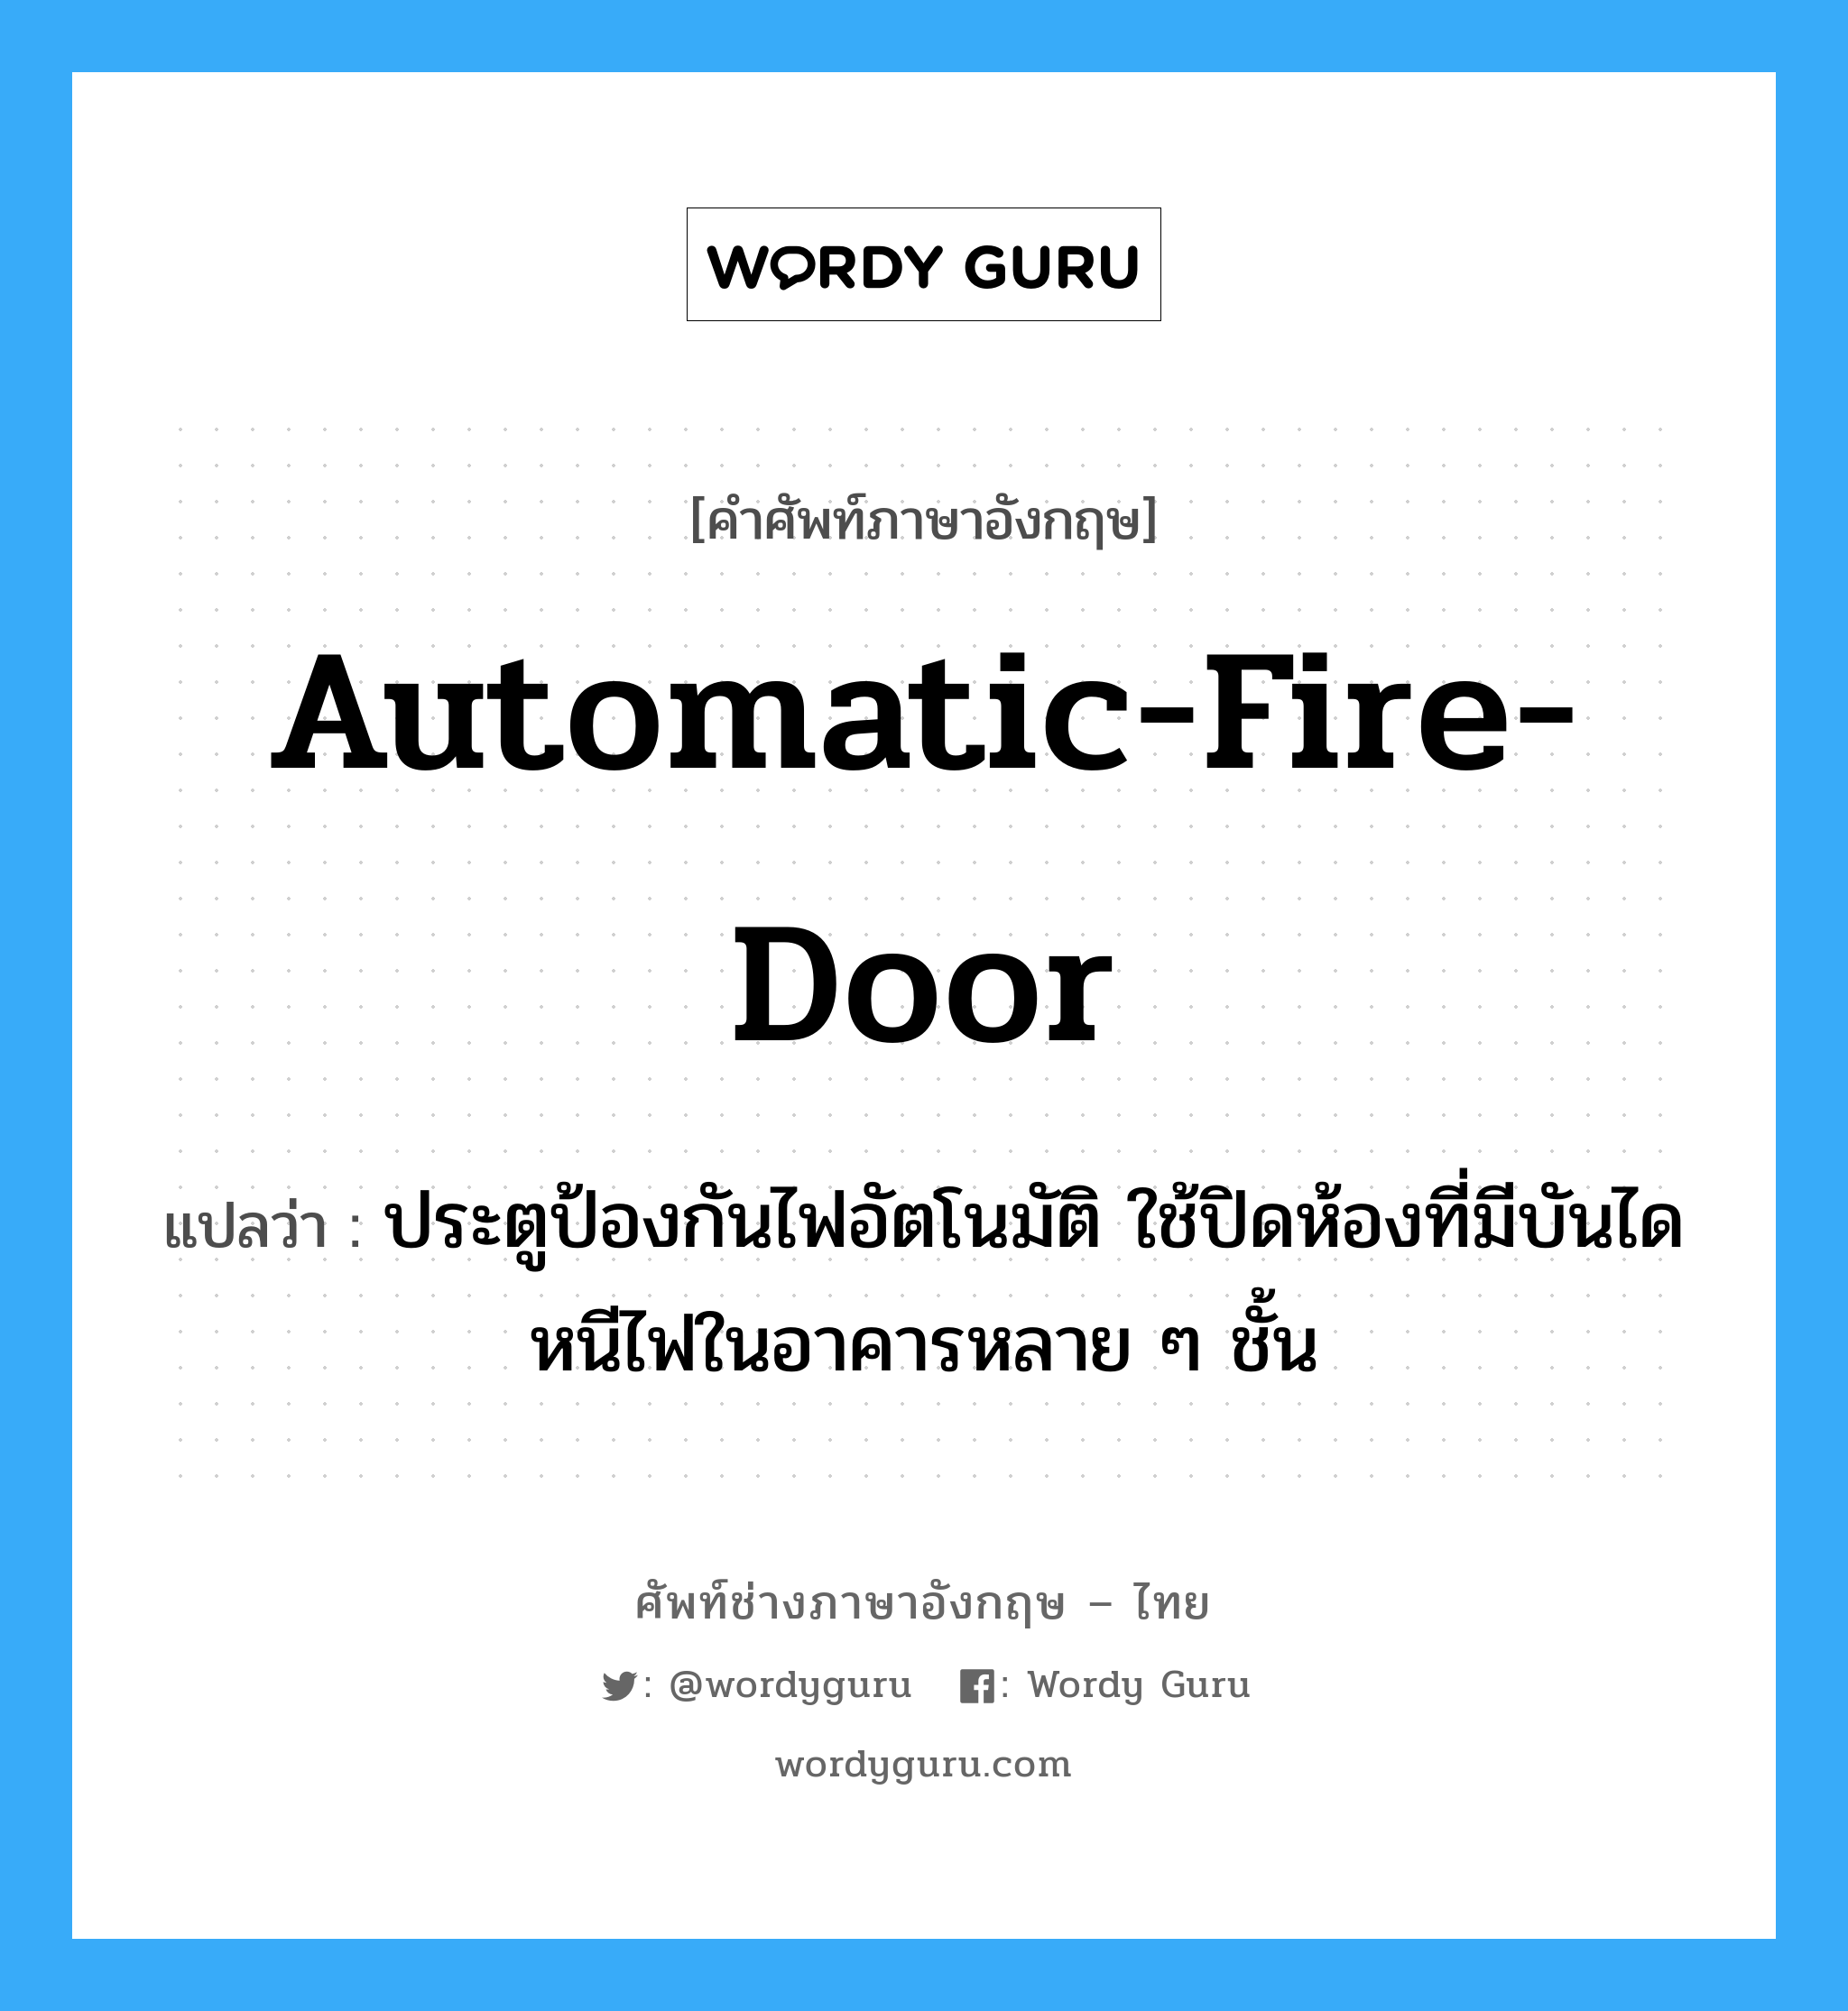 automatic-fire-door แปลว่า?, คำศัพท์ช่างภาษาอังกฤษ - ไทย automatic-fire-door คำศัพท์ภาษาอังกฤษ automatic-fire-door แปลว่า ประตูป้องกันไฟอัตโนมัติ ใช้ปิดห้องที่มีบันไดหนีไฟในอาคารหลาย ๆ ชั้น